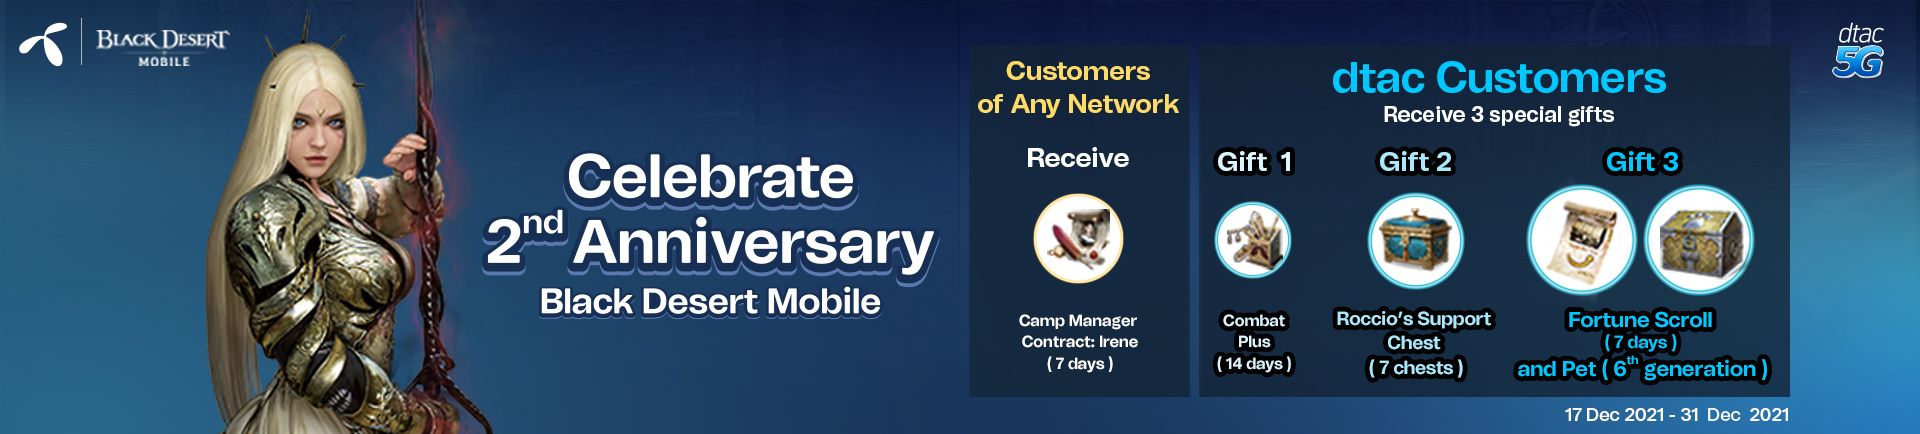 Celebrate 2nd anniversary of Black Desert Mobile